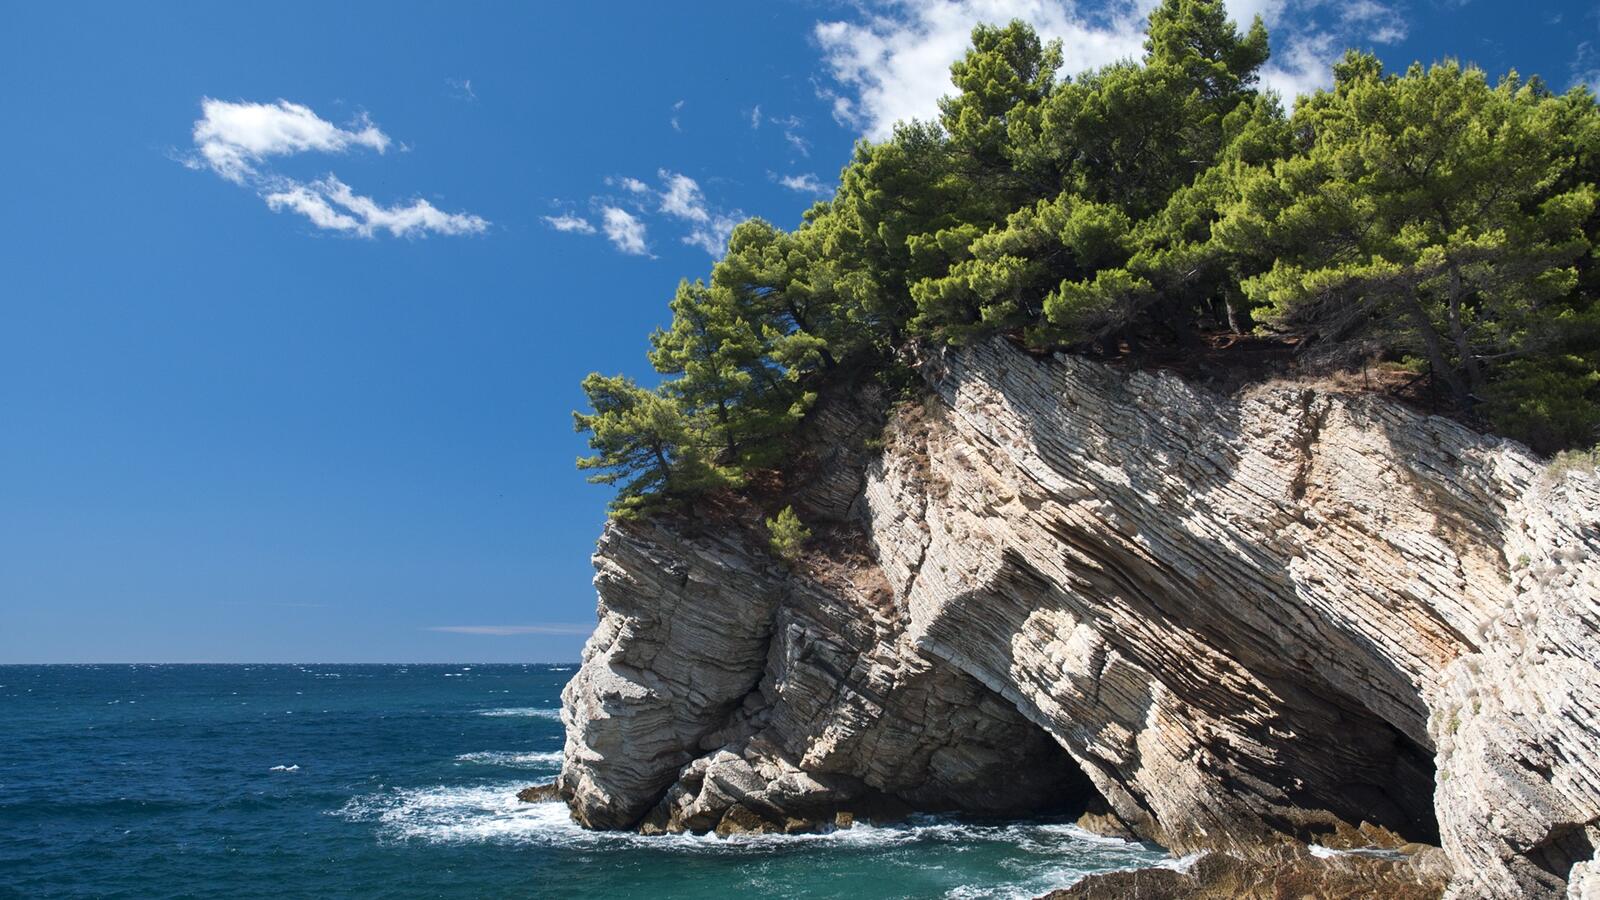 Бесплатное фото Скала с деревьями на берегу моря